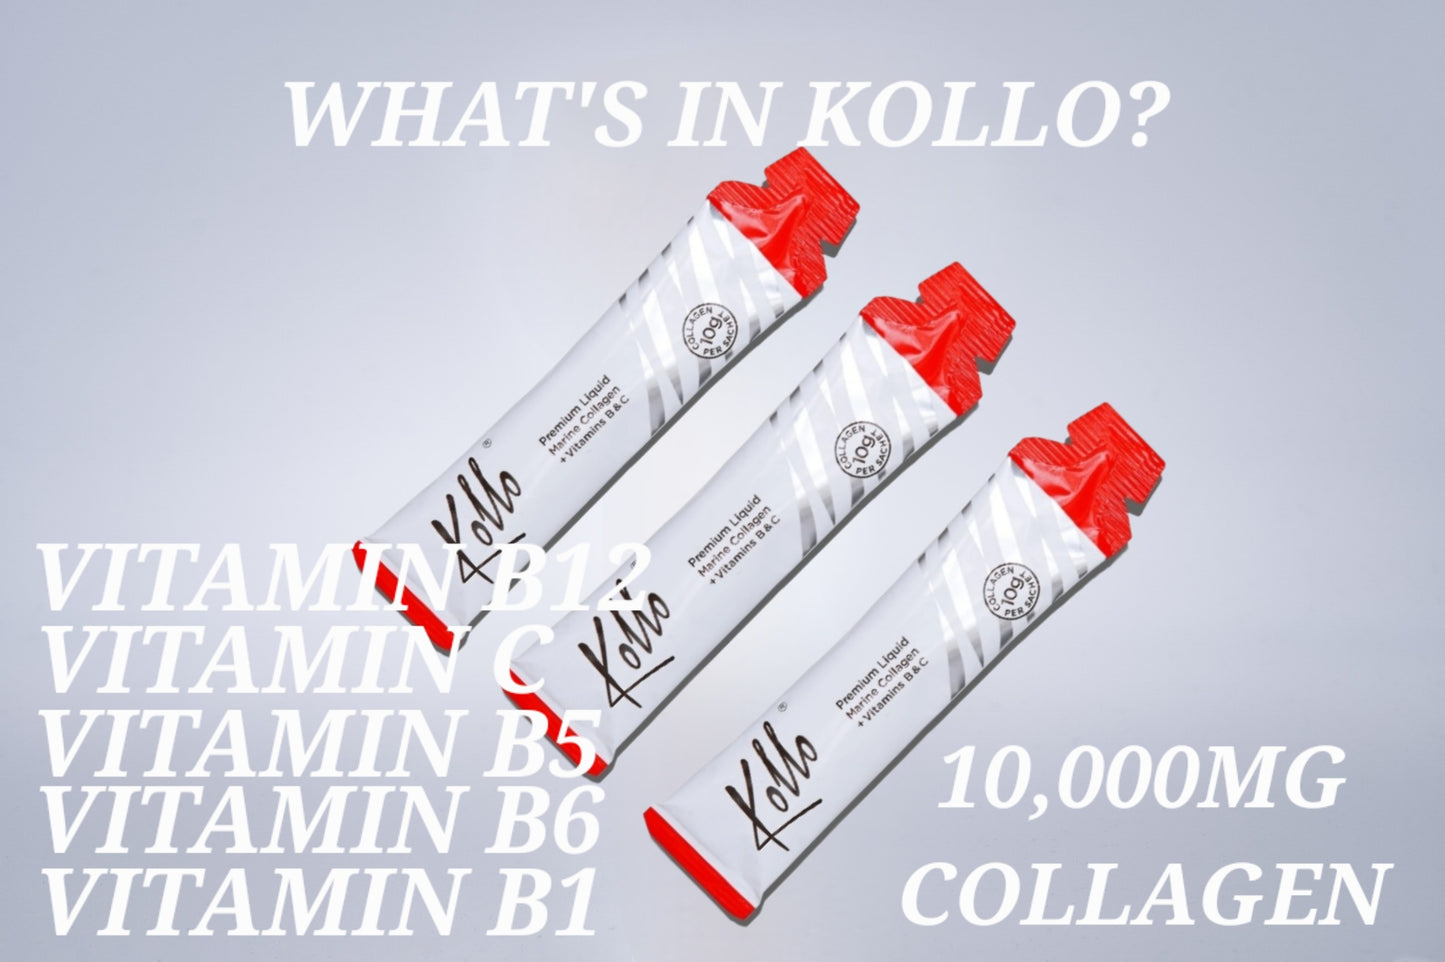 Kollo 10,000mg Premium Liquid Marine Collagen